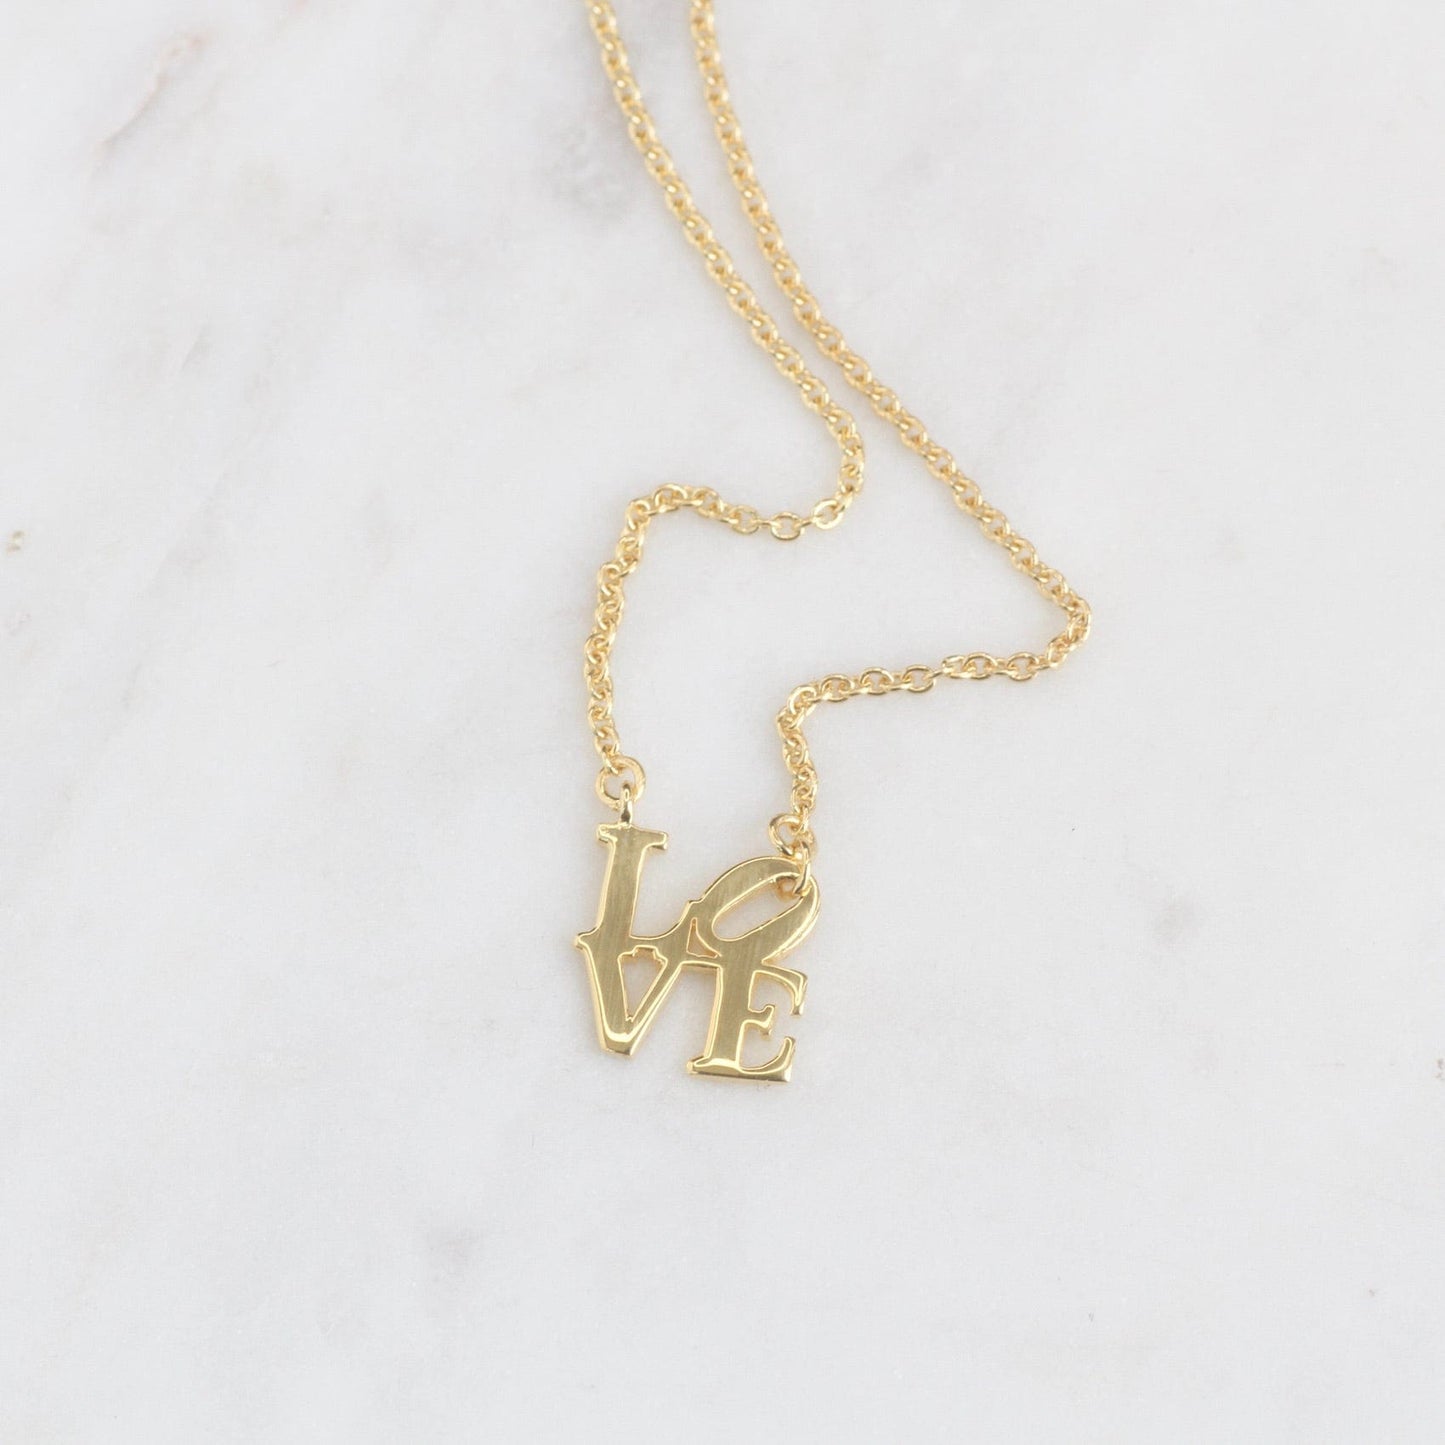 NKL-VRM Gold Vermeil Polished Mini LOVE Sculpture Necklace